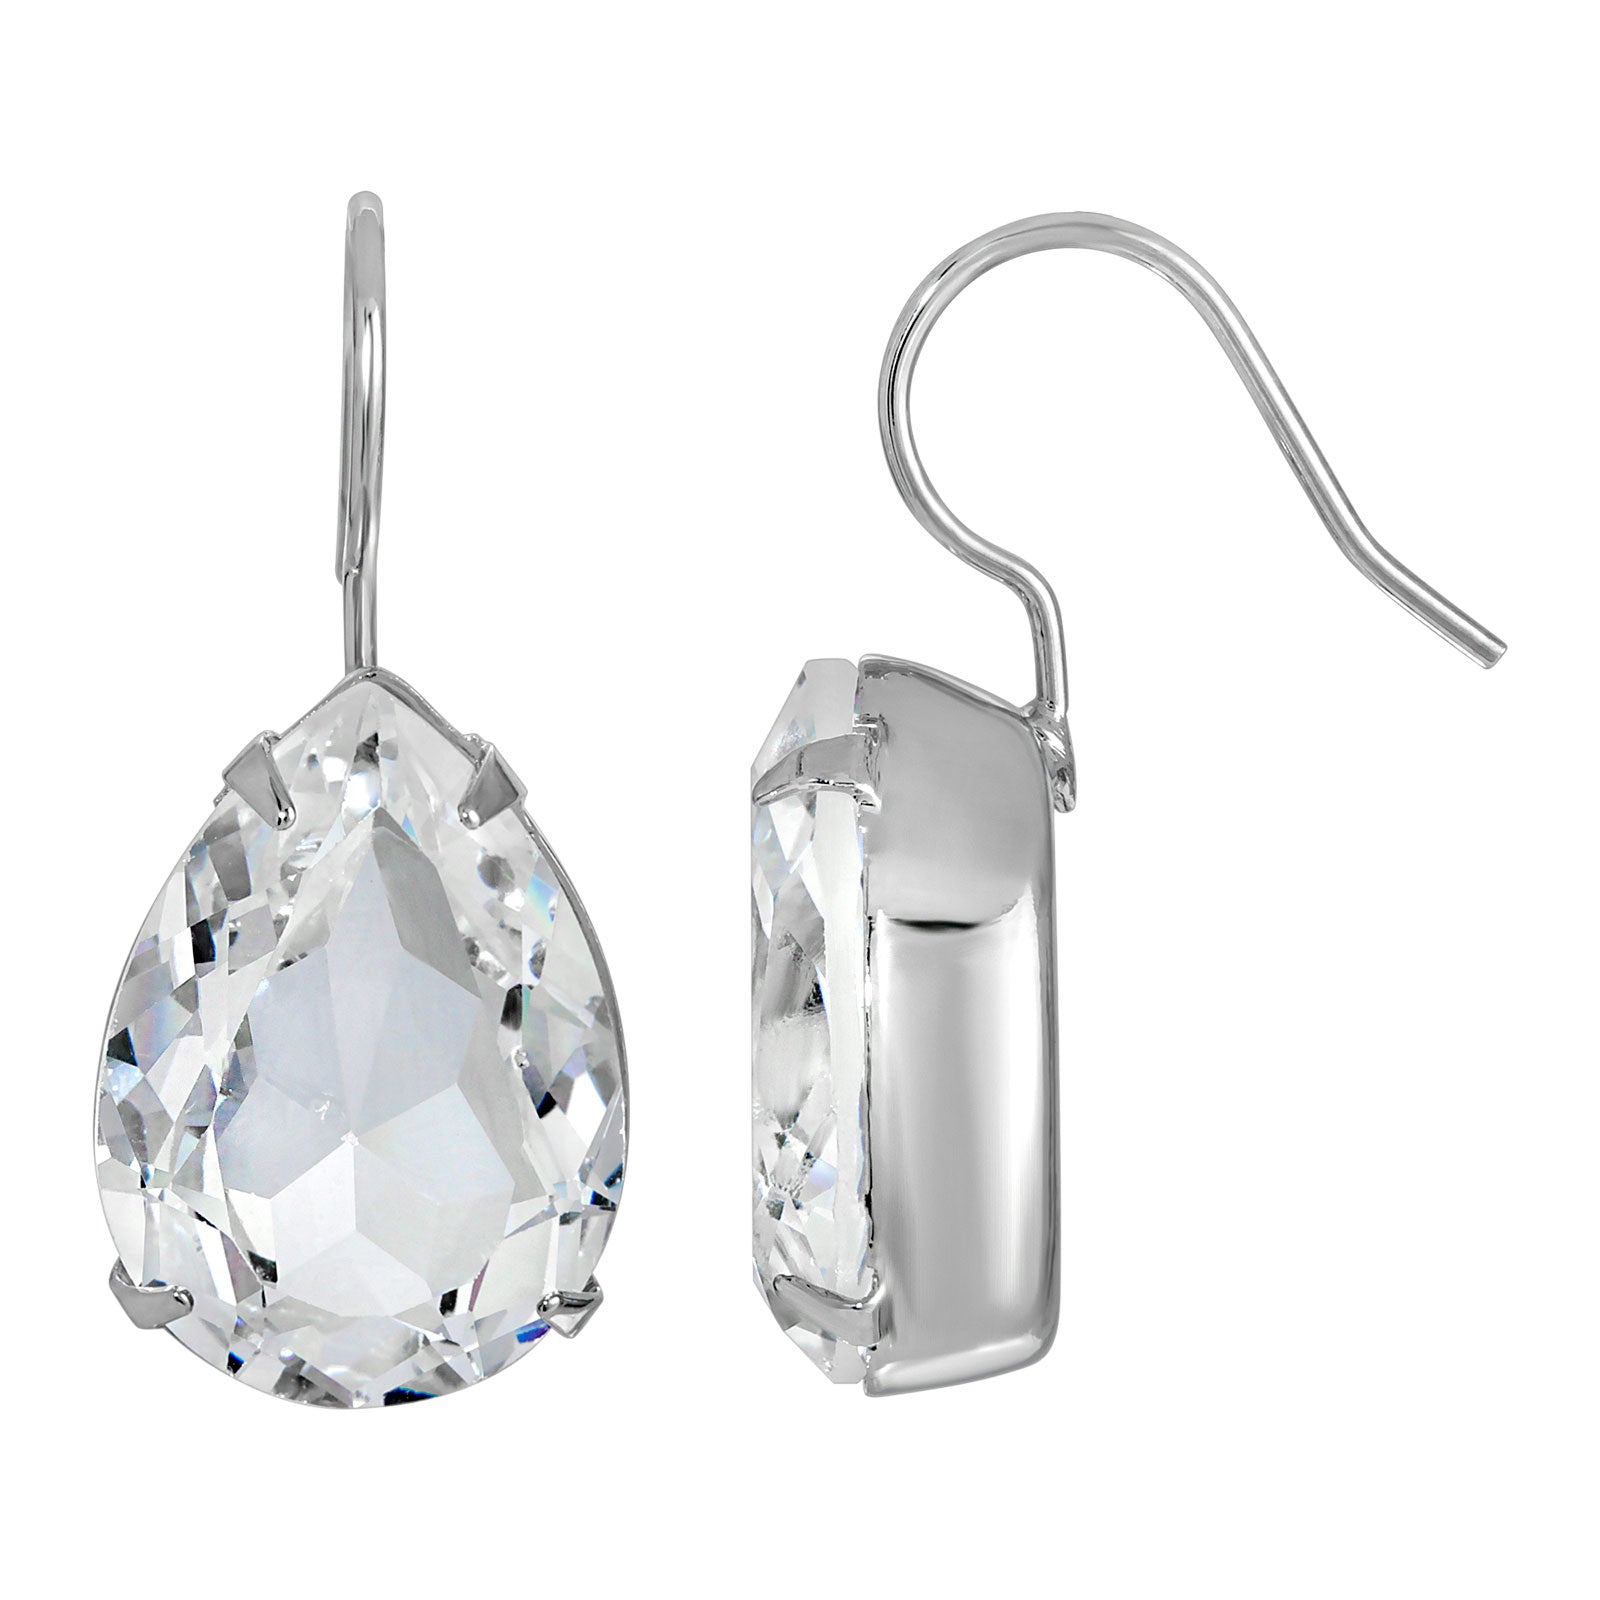 1928 Jewelry Classic Austrian Crystal Teardrop Earrings